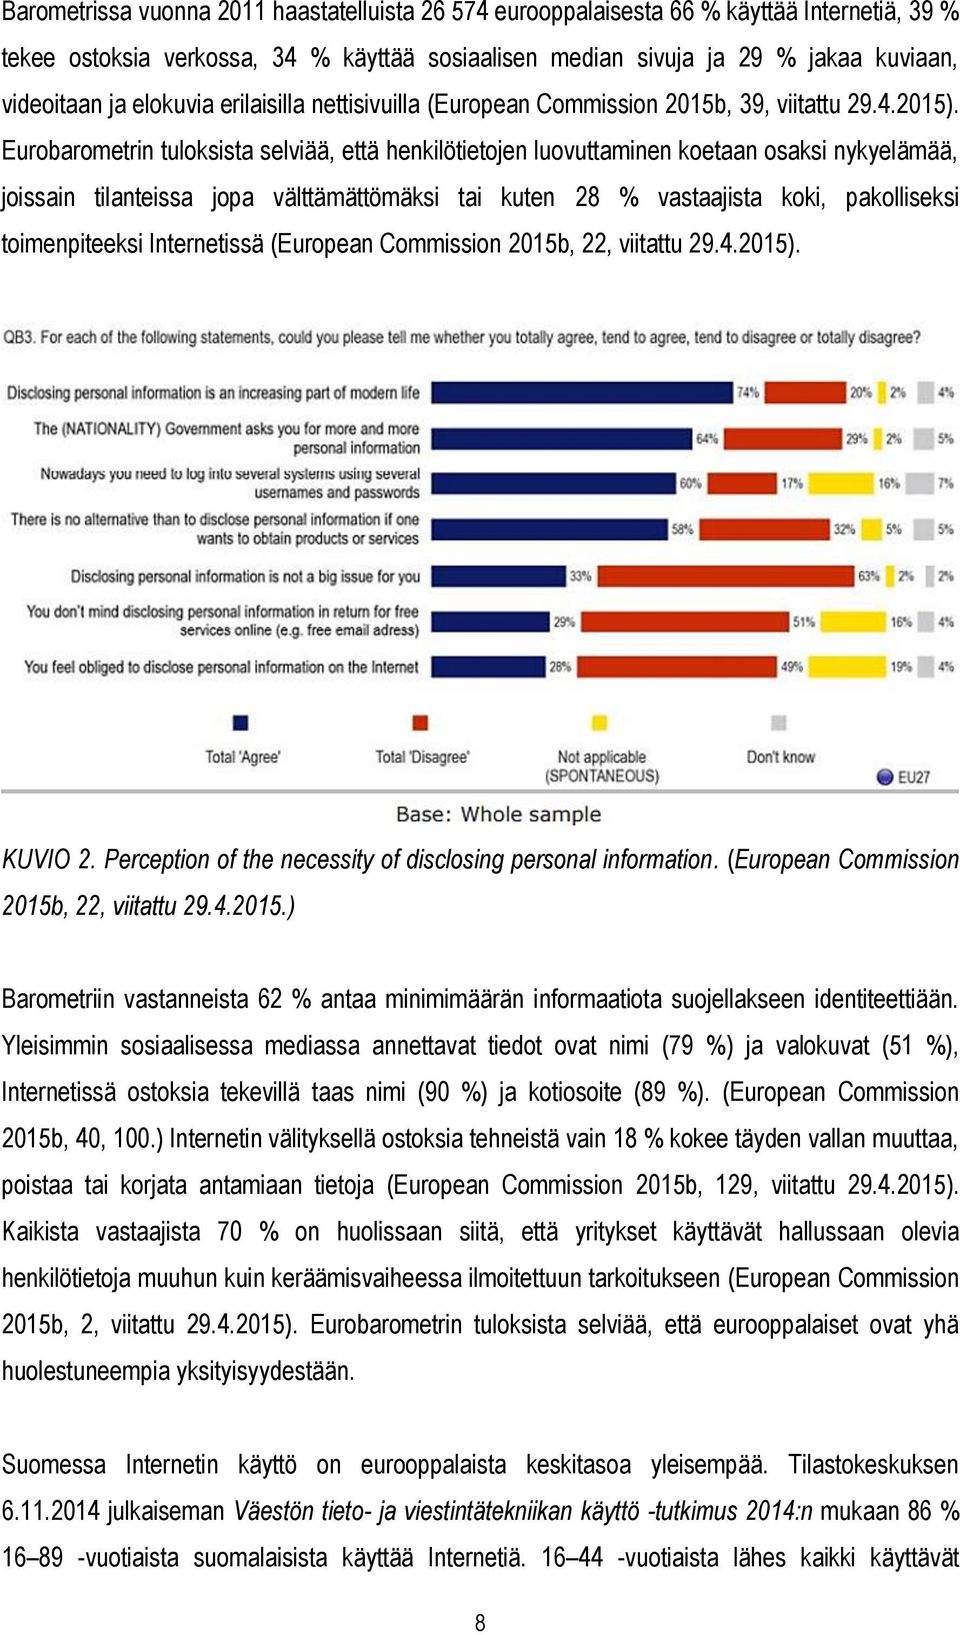 Eurobarometrin tuloksista selviää, että henkilötietojen luovuttaminen koetaan osaksi nykyelämää, joissain tilanteissa jopa välttämättömäksi tai kuten 28 % vastaajista koki, pakolliseksi